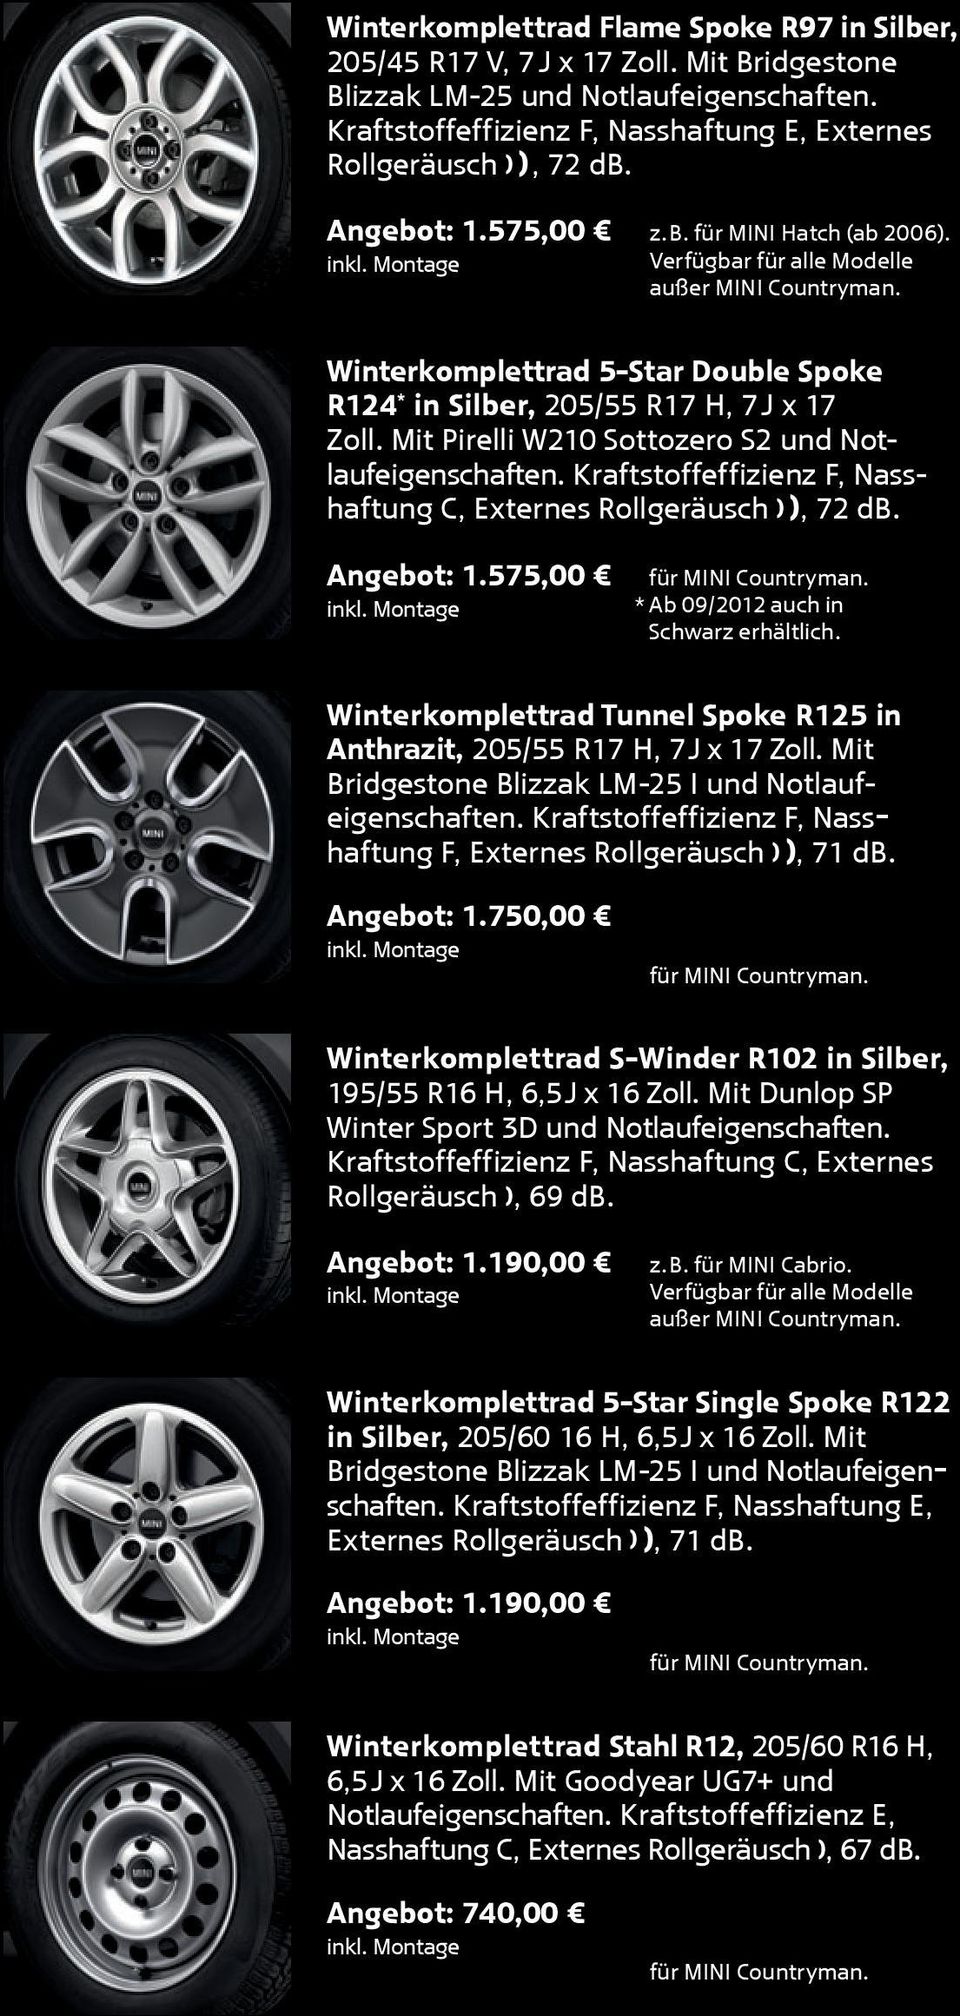 Winterkomplettrad 5-Star Double Spoke R124 * in Silber, 205/55 R17 H, 7 J x 17 Zoll. Mit Pirelli W210 Sottozero S2 und Notlaufeigenschaften.